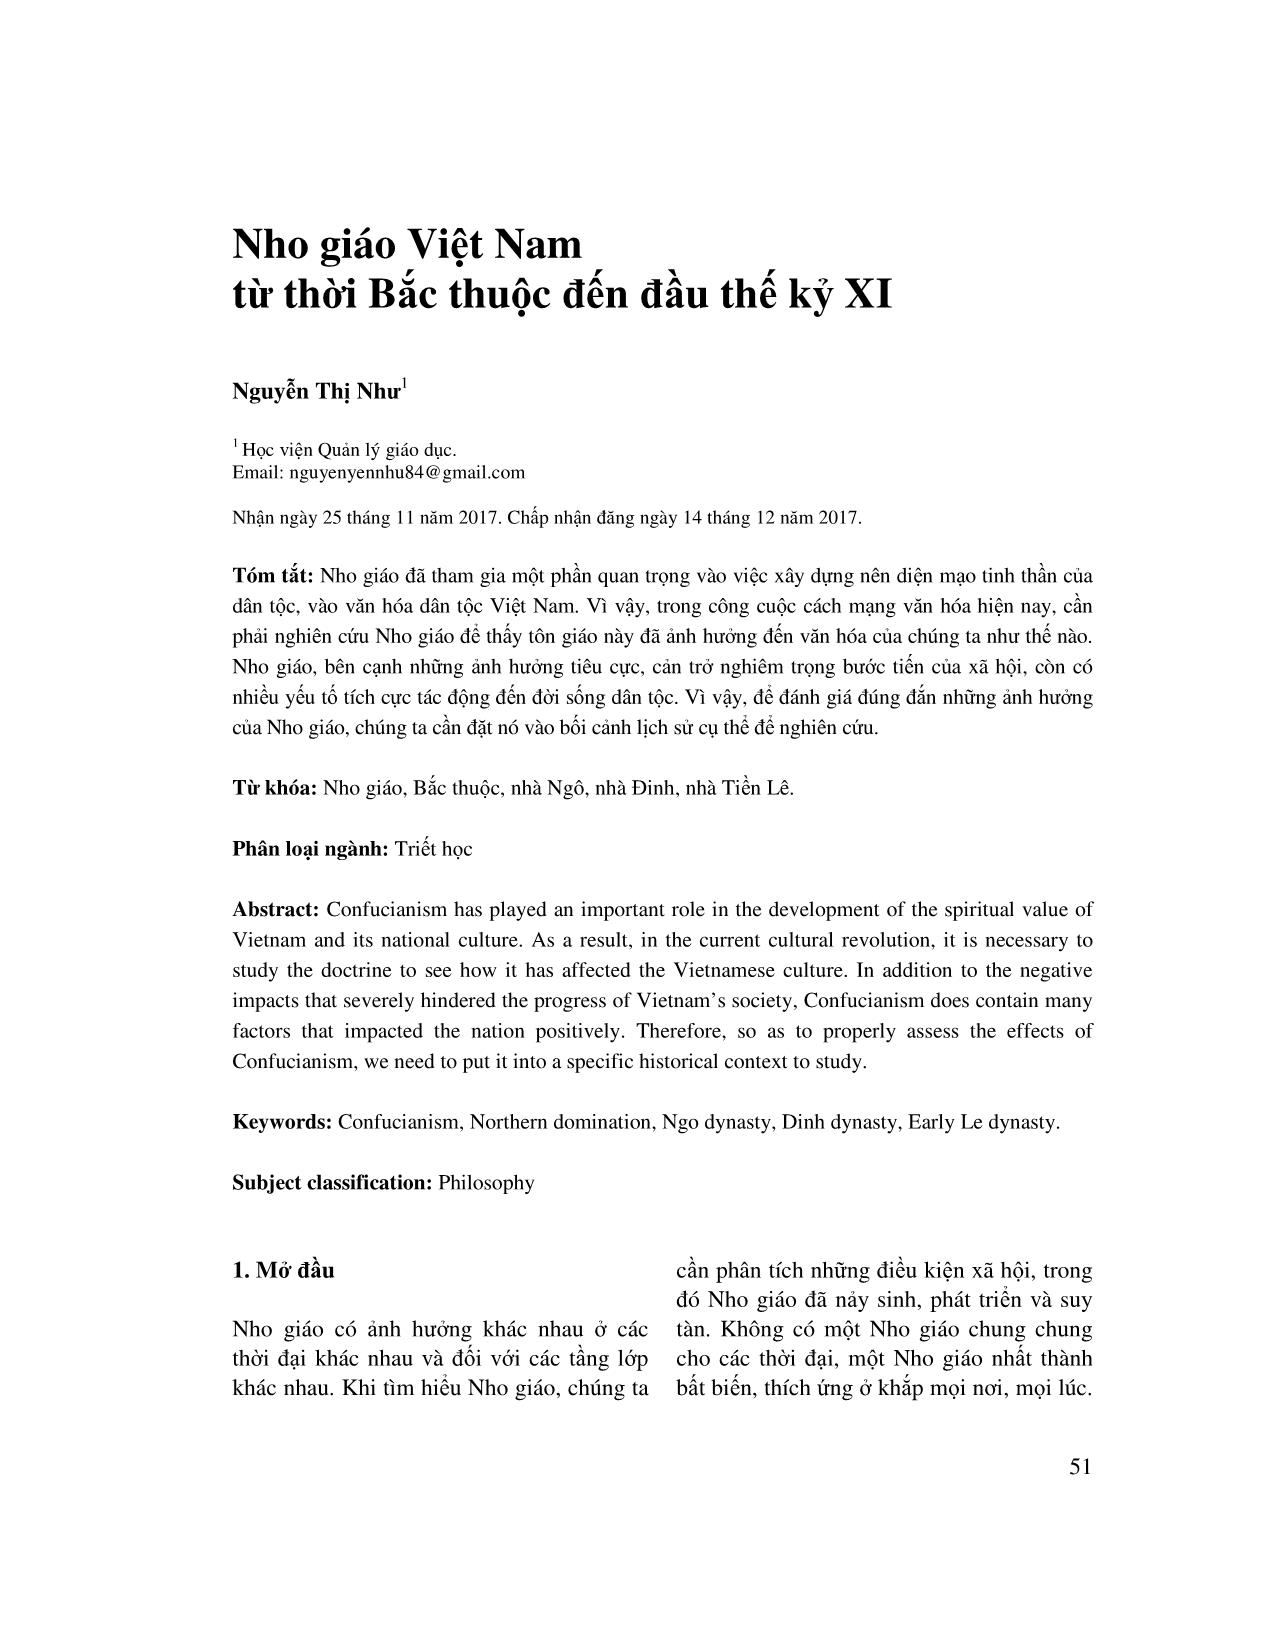 Nho giáo Việt Nam từ thời Bắc thuộc đến đầu thế kỷ XI trang 1